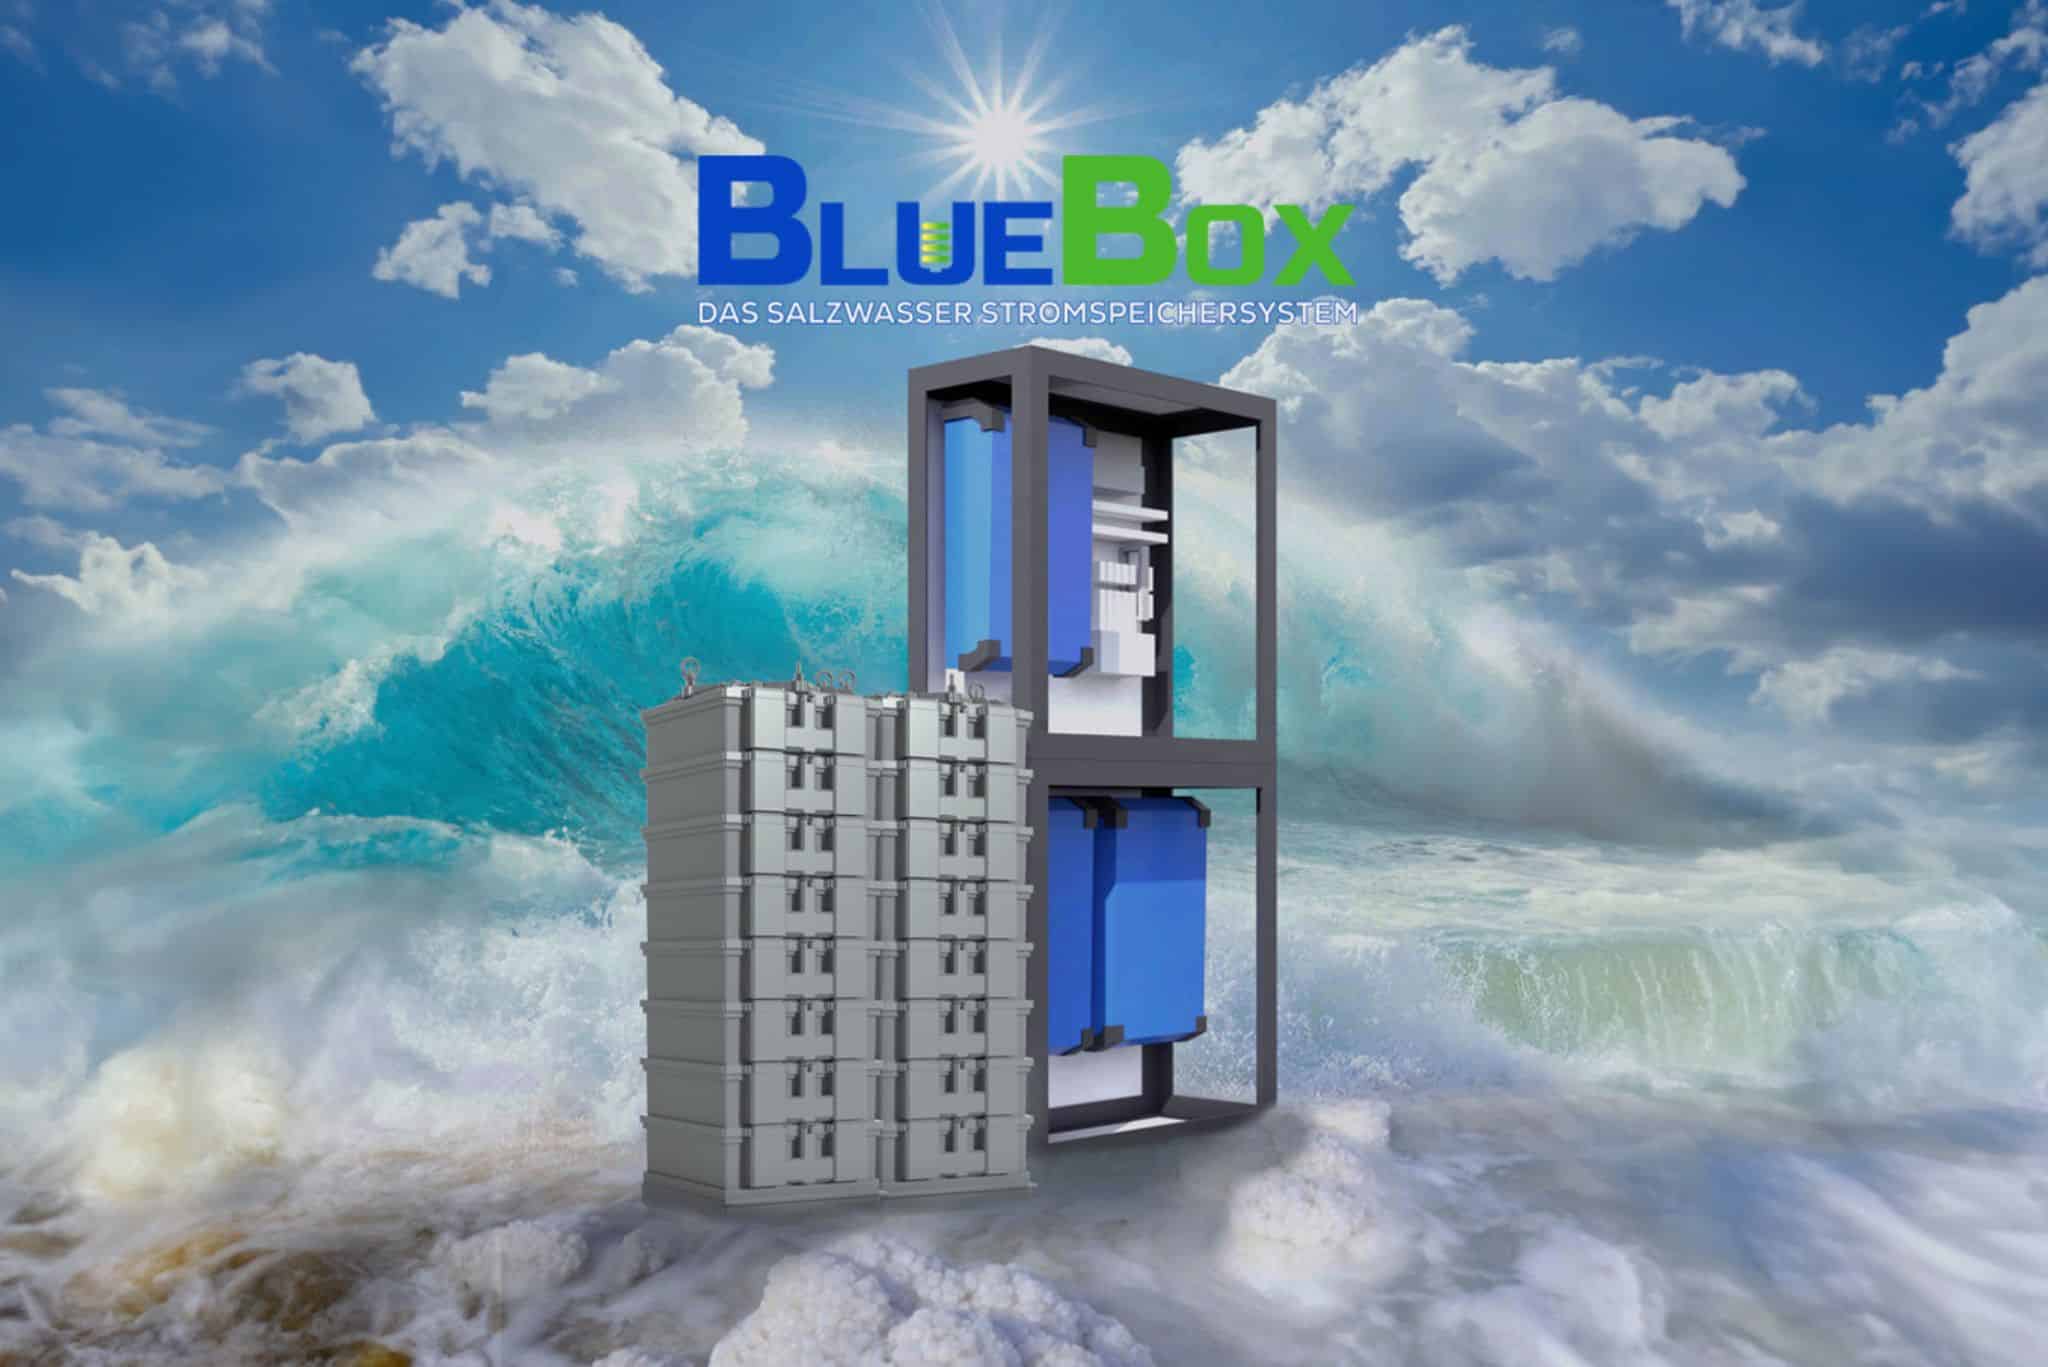 Ein umweltfreundlicher Stromspeicher, der nicht brennbar ist – geht das überhaupt? Ja: Mit dem Salzwasser-Stromspeicher BlueBox.